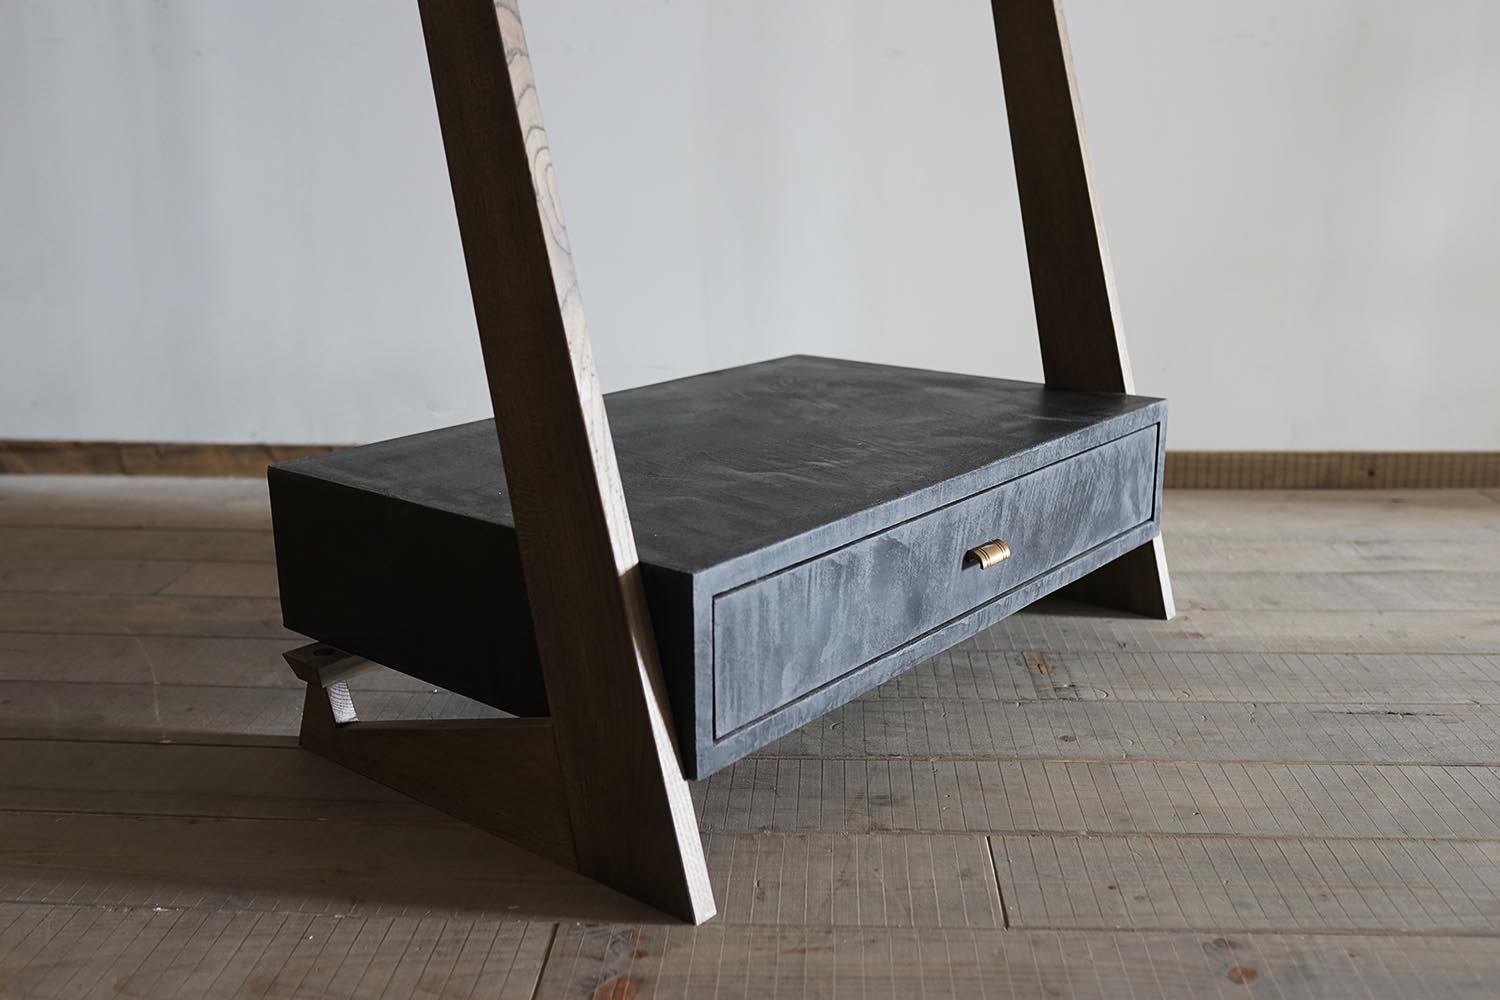 モールテックスによる、
様々な形状のモルタル調の家具製作が可能です